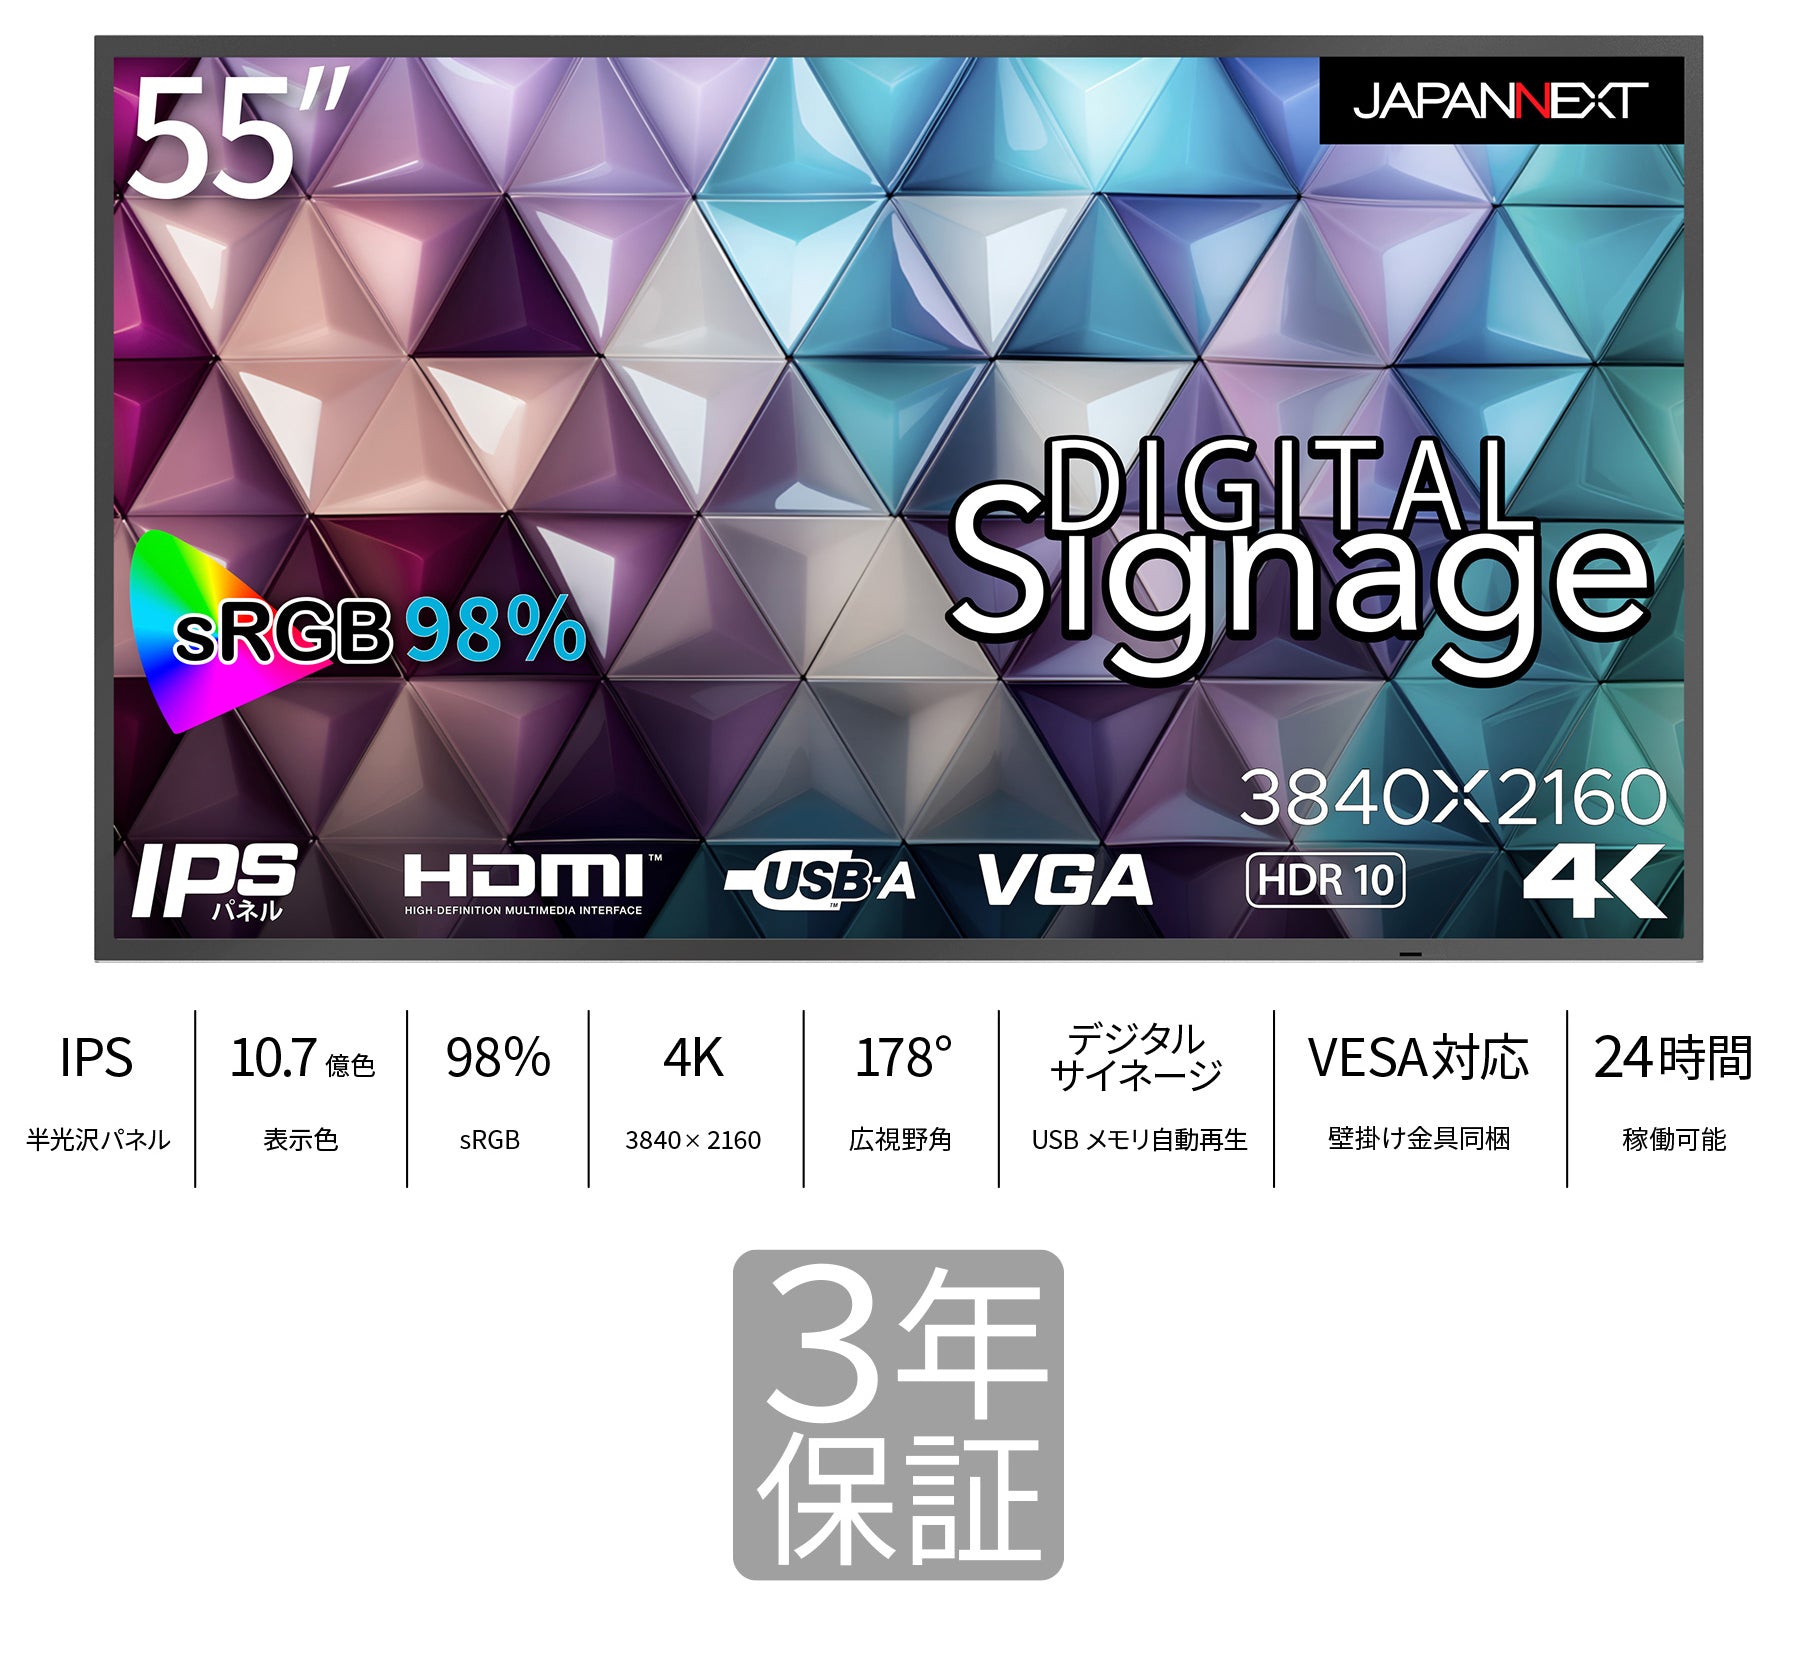 3年保証】JAPANNEXT 24時間対応 55インチ 大型4K(3840x2160)ディスプレイ HDMI VGA USB再生 デジタルサイネージ  sRGB98% 対応